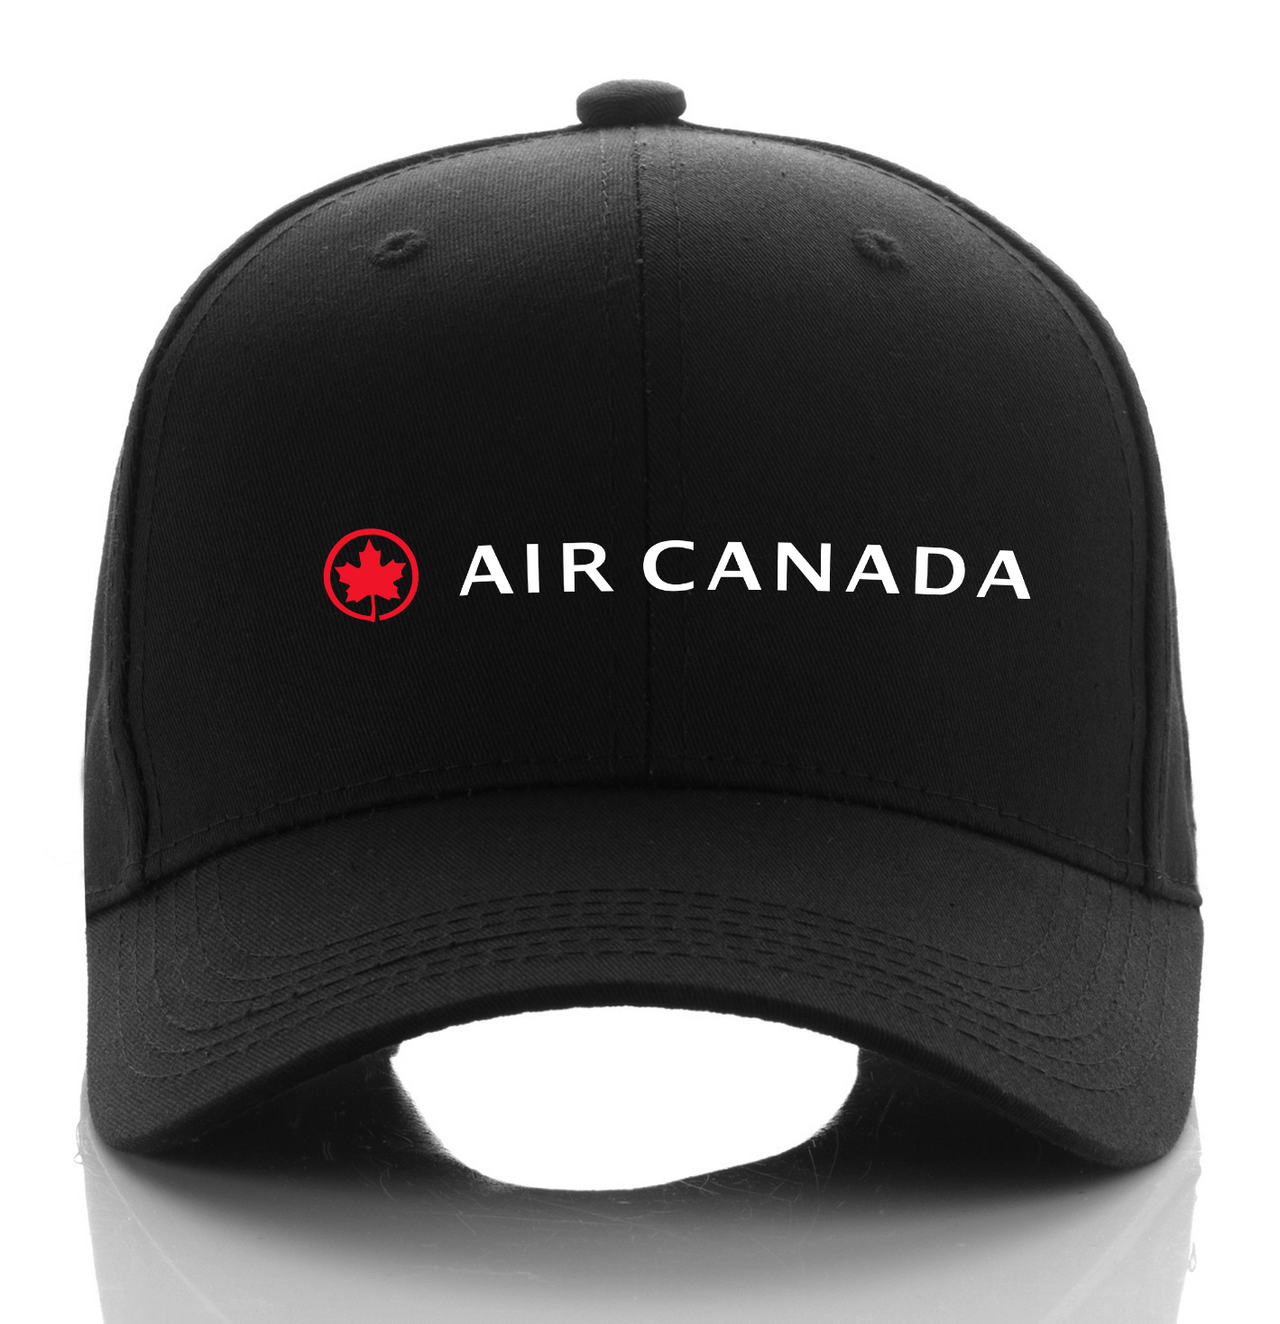 CANADA AIRLINE DESIGNED CAP